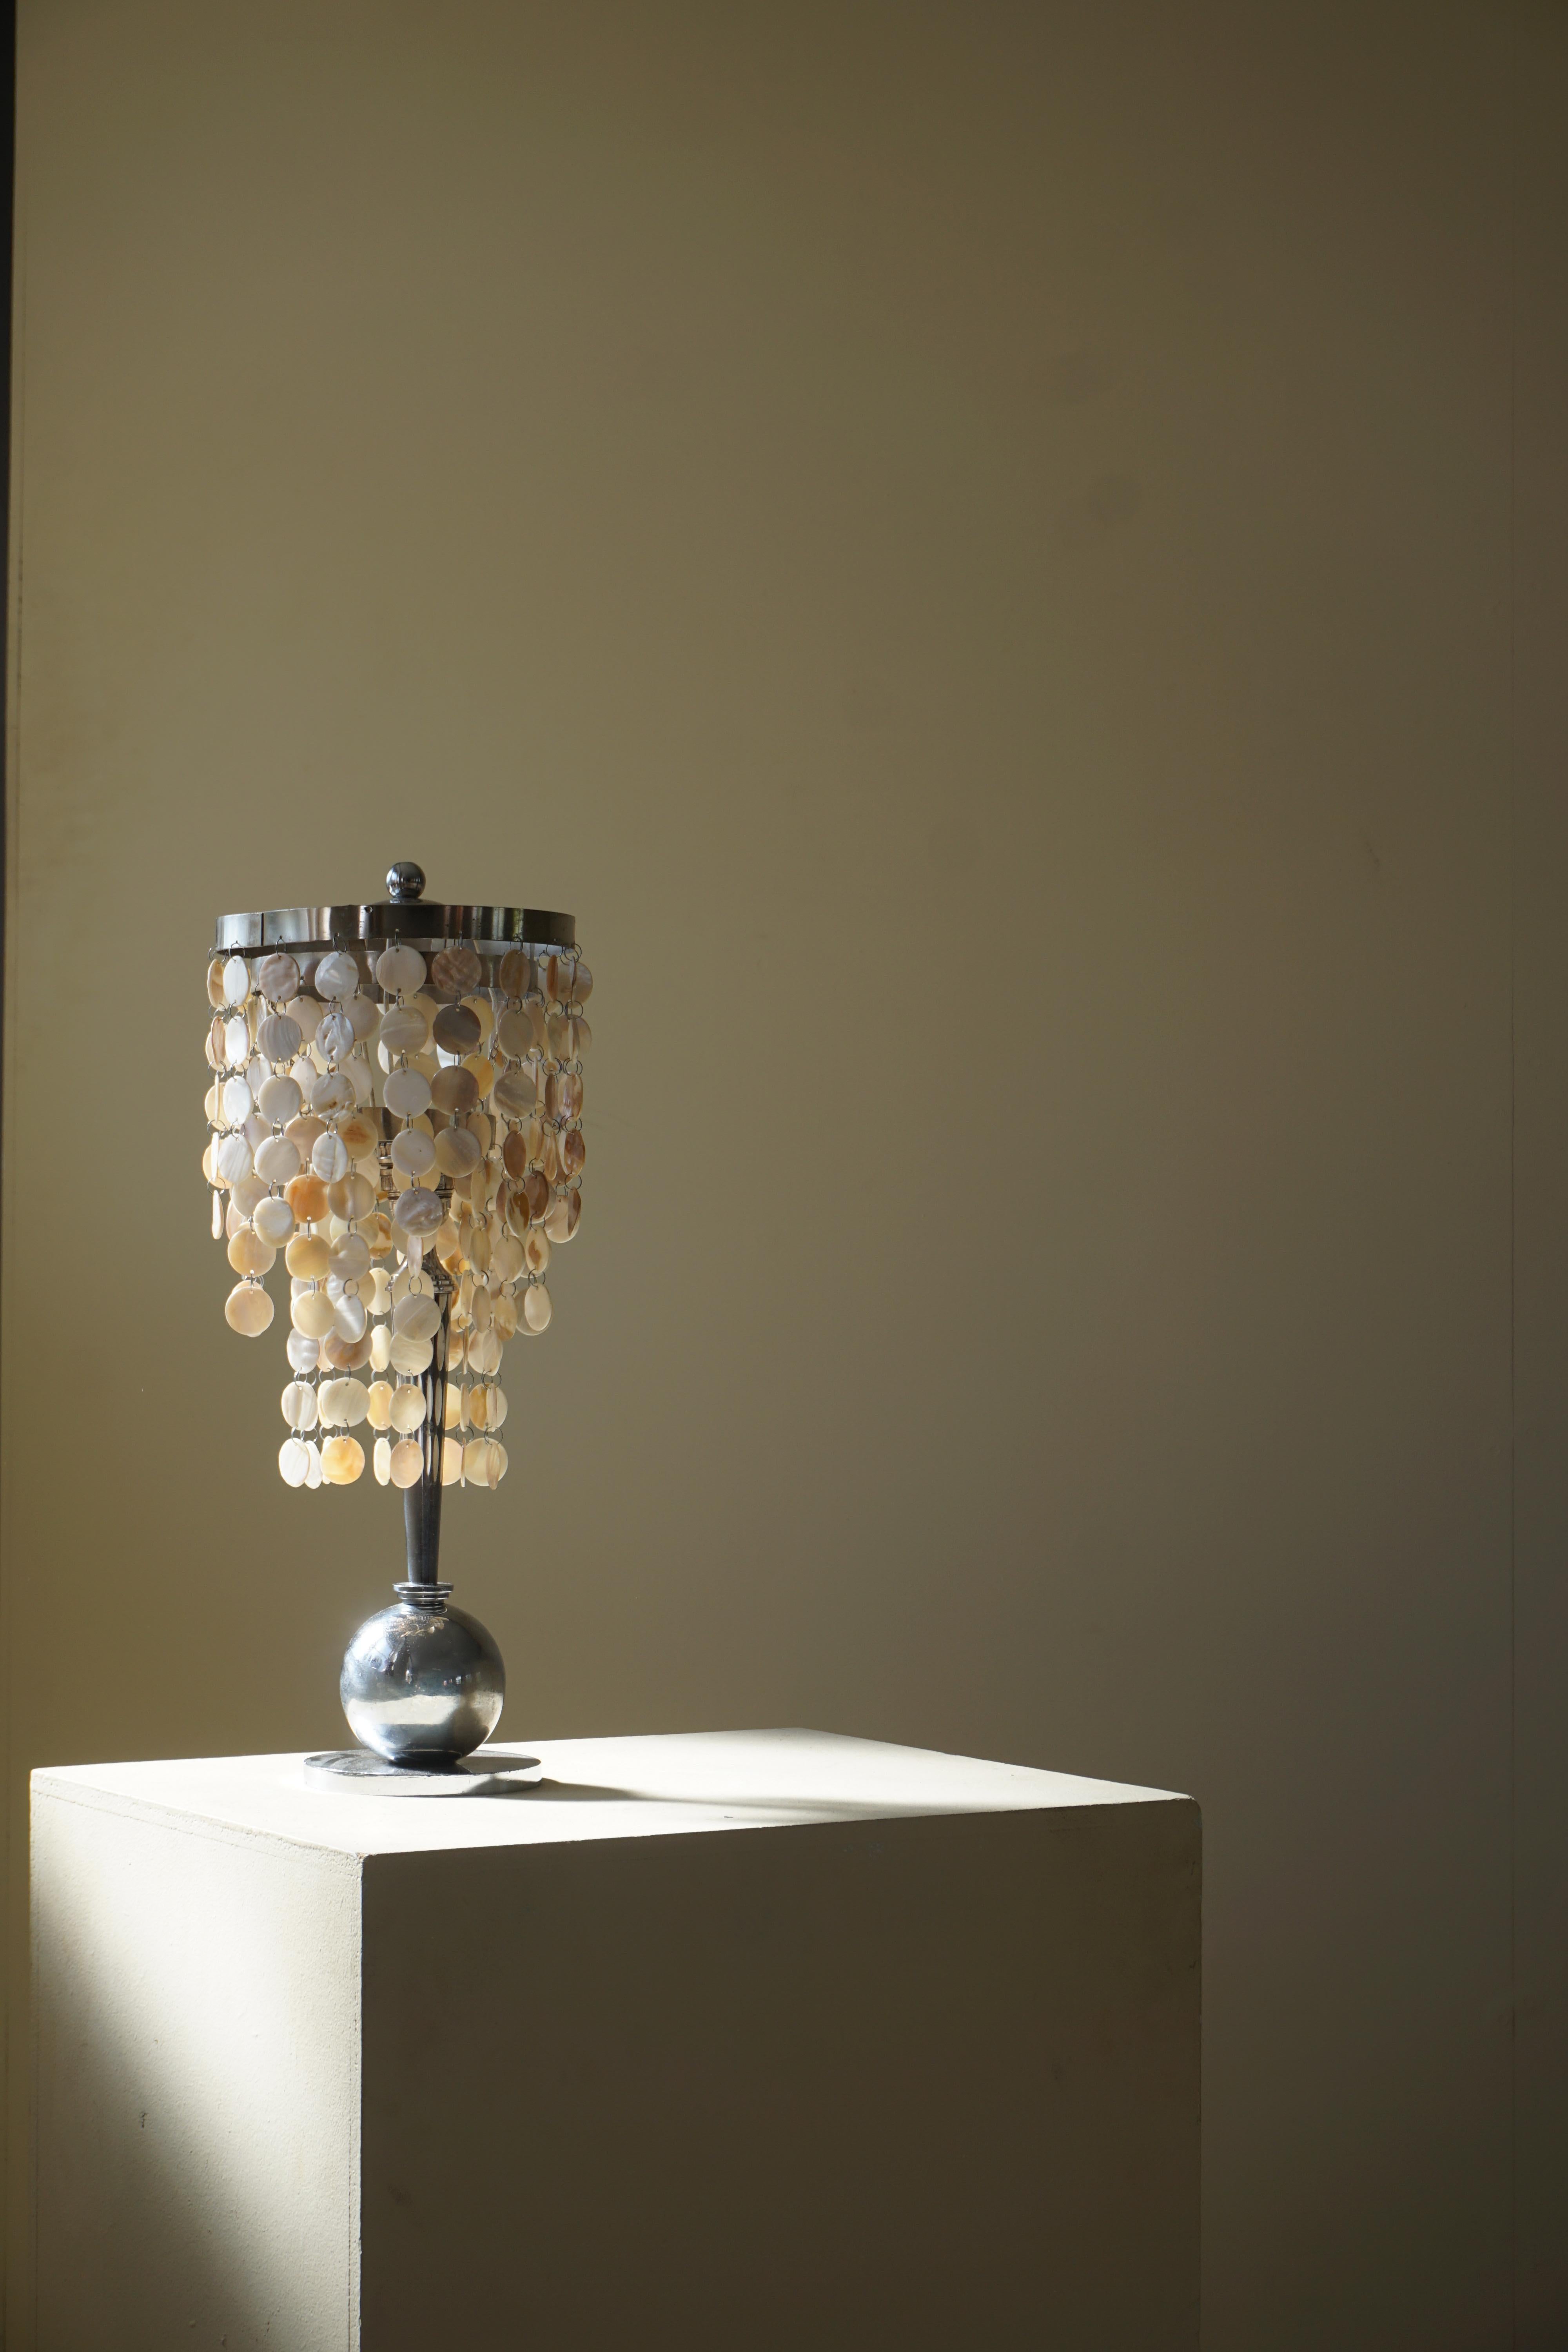 Lampe de table Art Déco avec plateau en nacre et encadrement de style funkis. Fabriqué dans les années 1940.